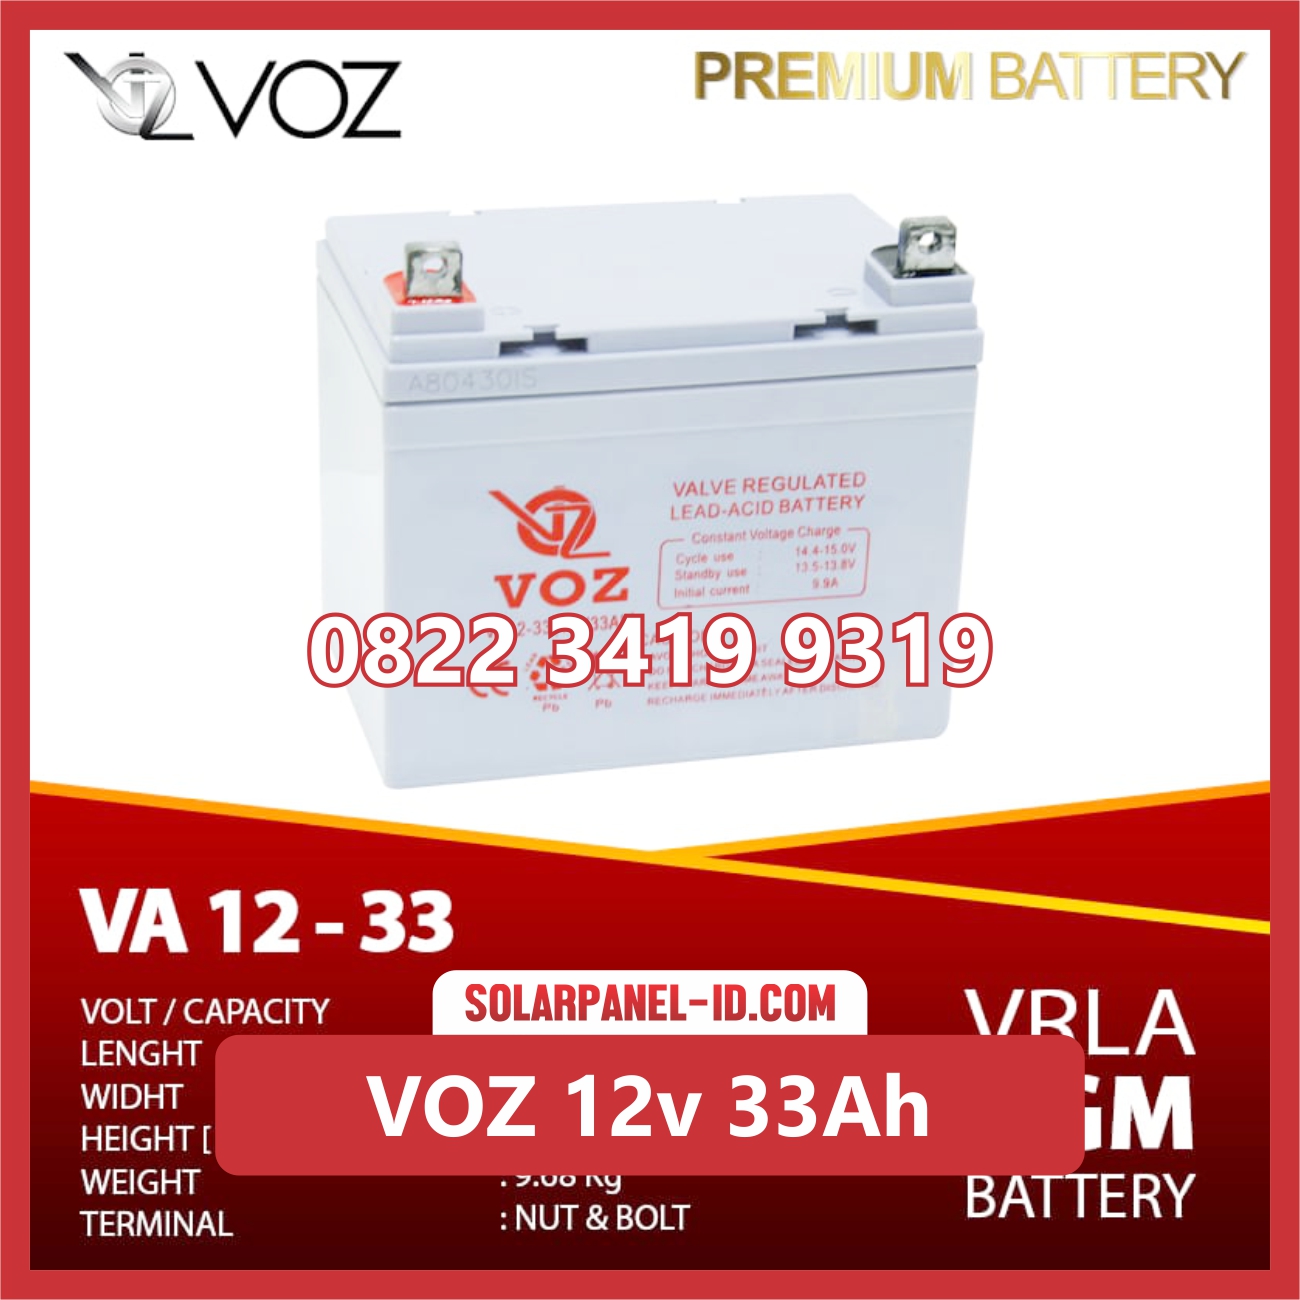 VOZ baterai kering 12v 33Ah baterai solarcell